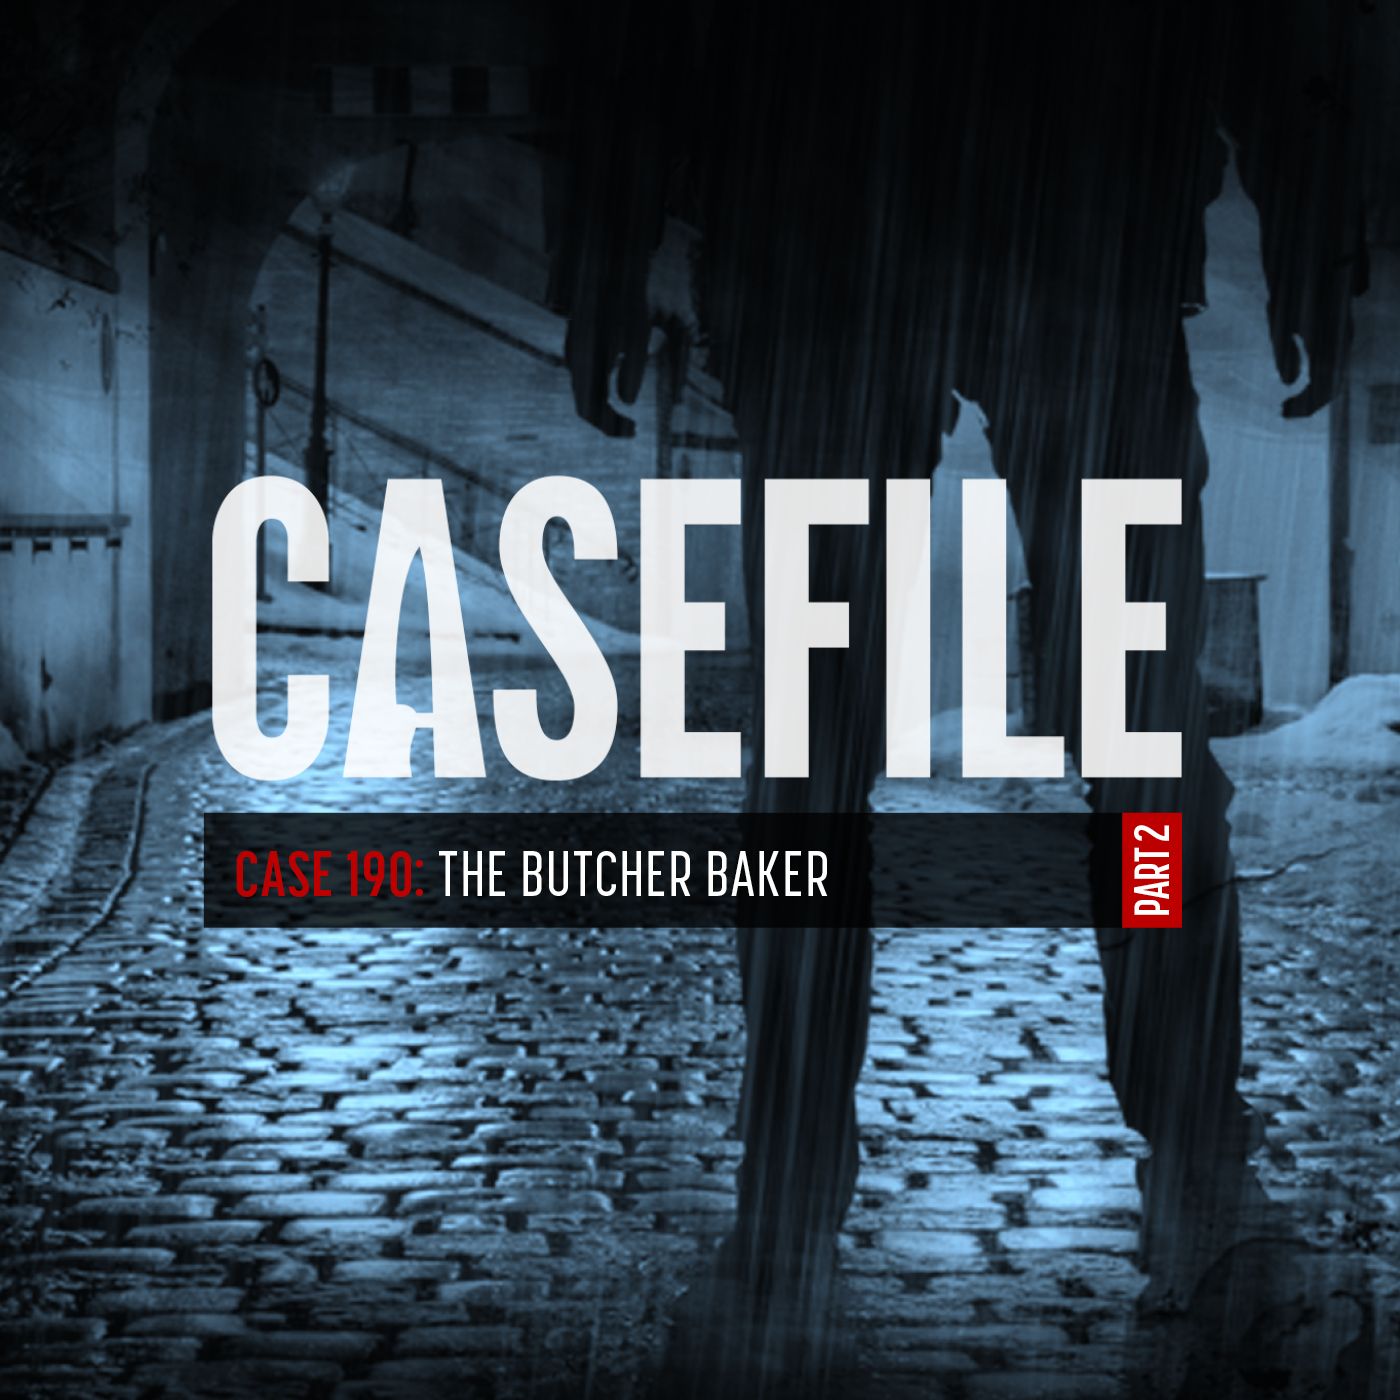 Case 190: The Butcher Baker (Part 2)